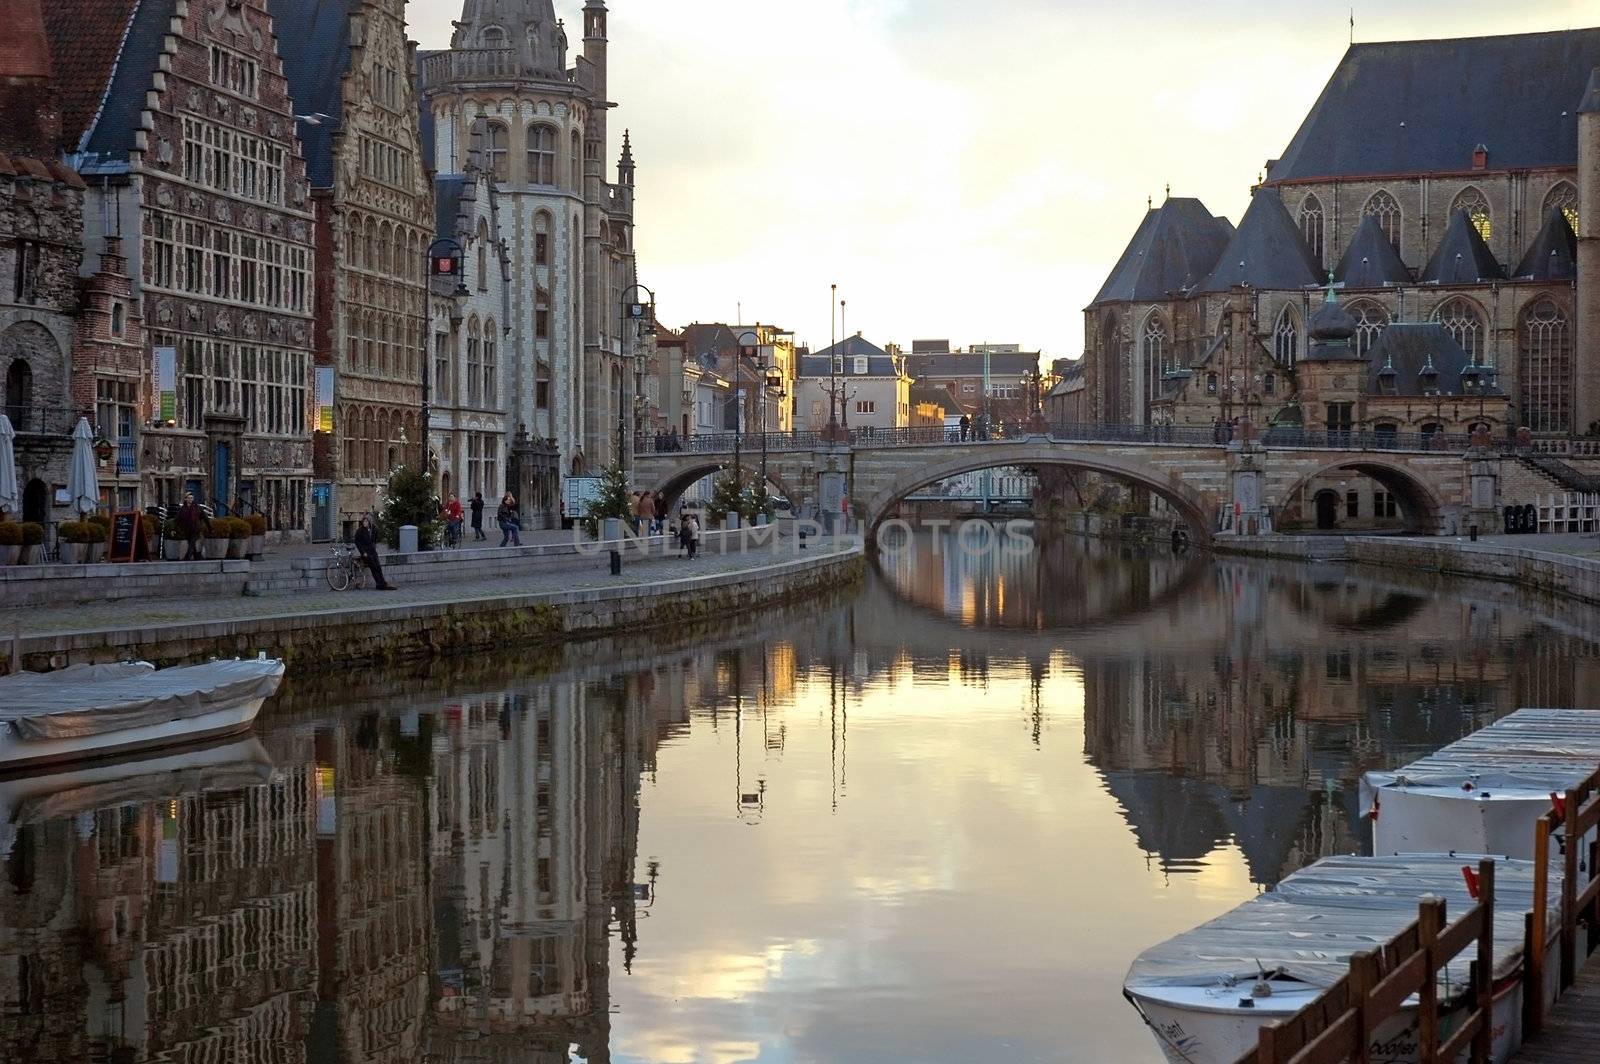 Graslei in Ghent, Belgium by ruigsantos